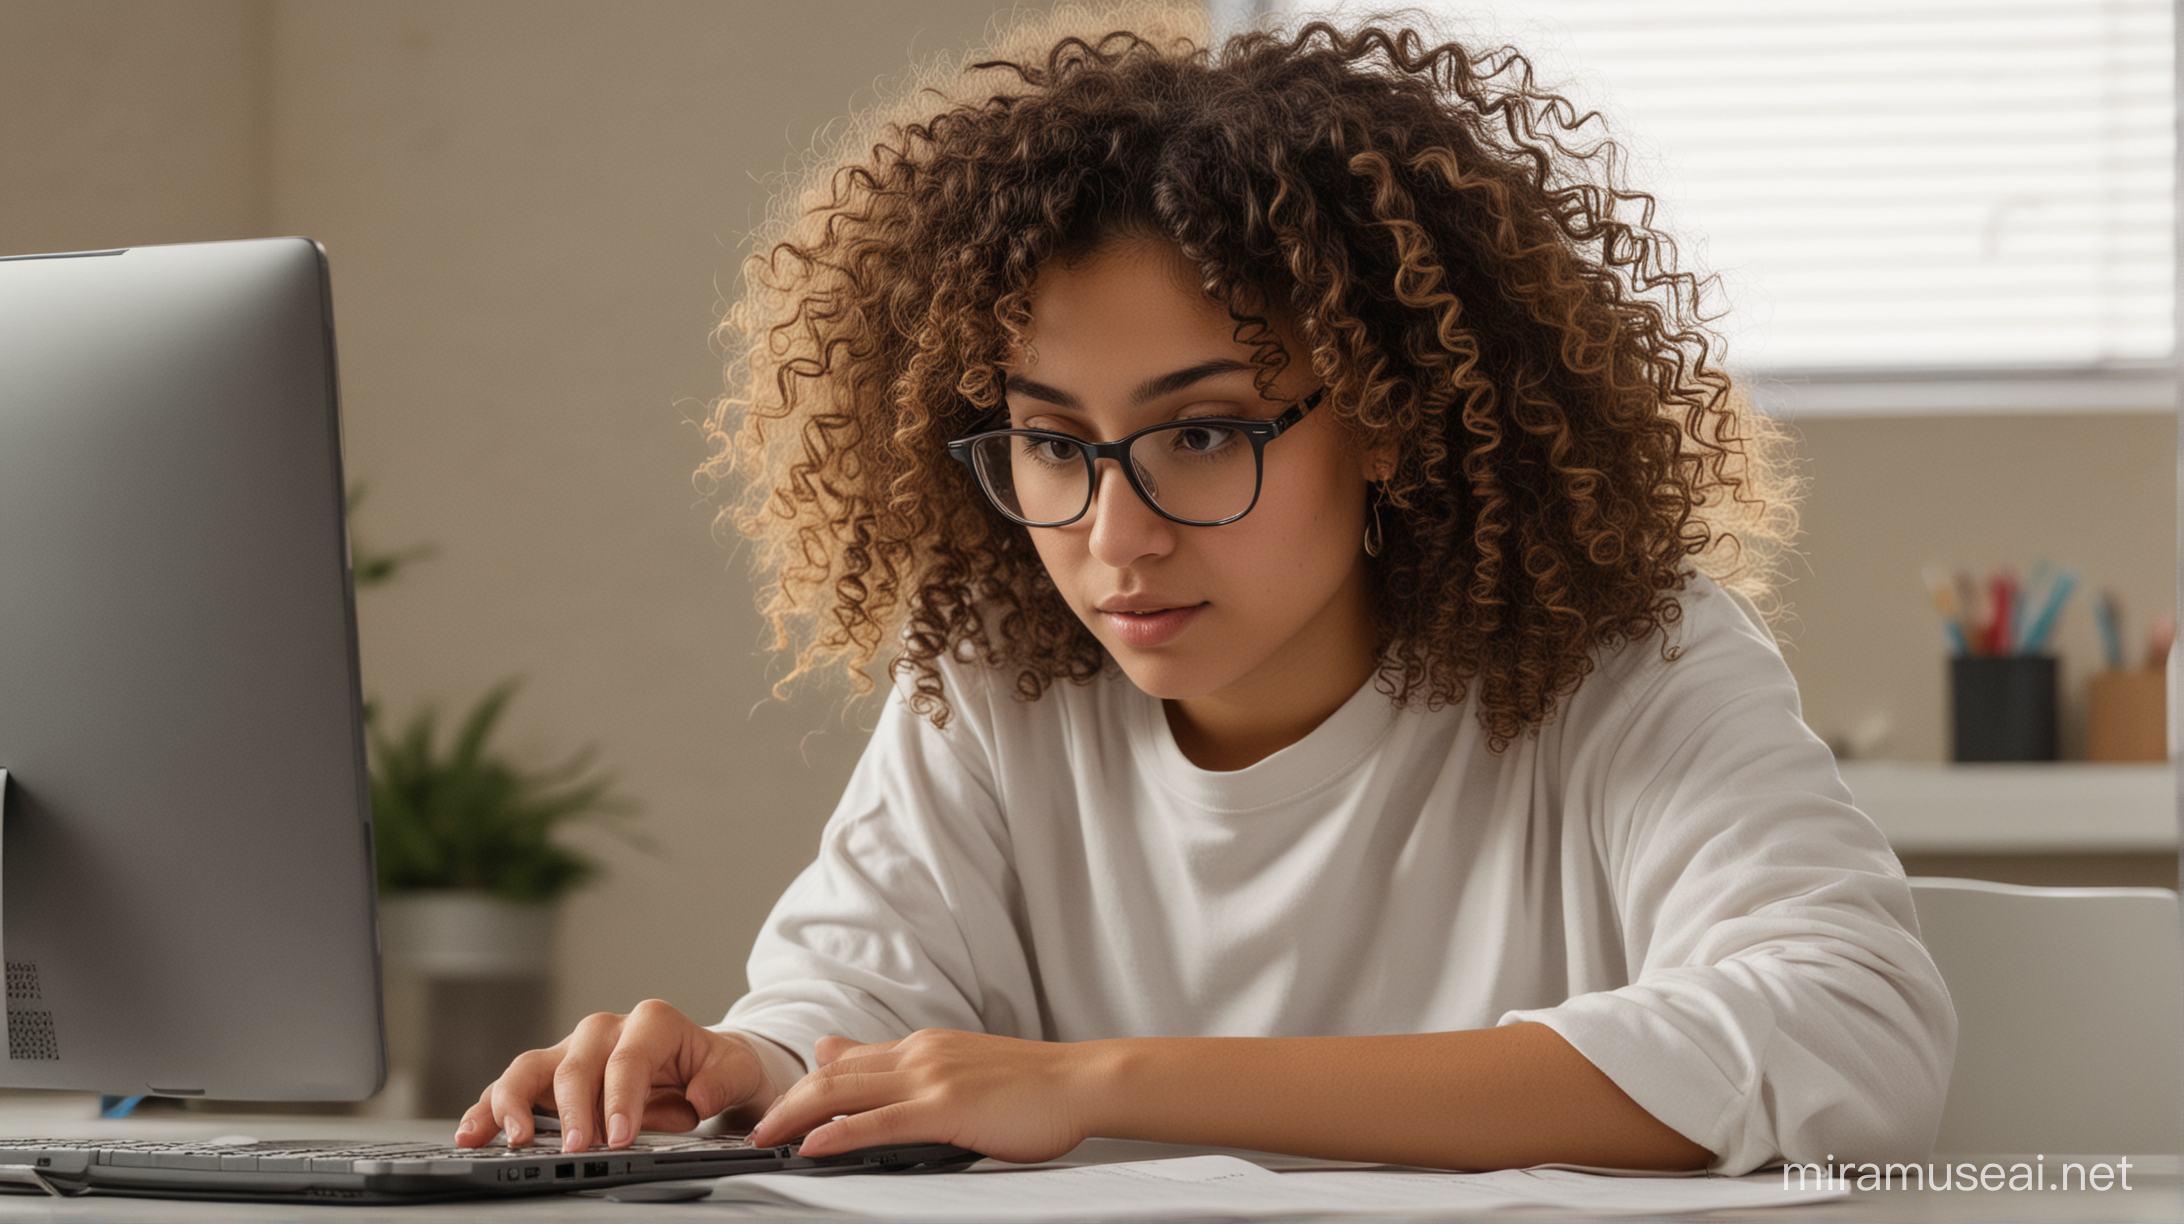 Garota latina com cabelos encaracolados estudando em um computador